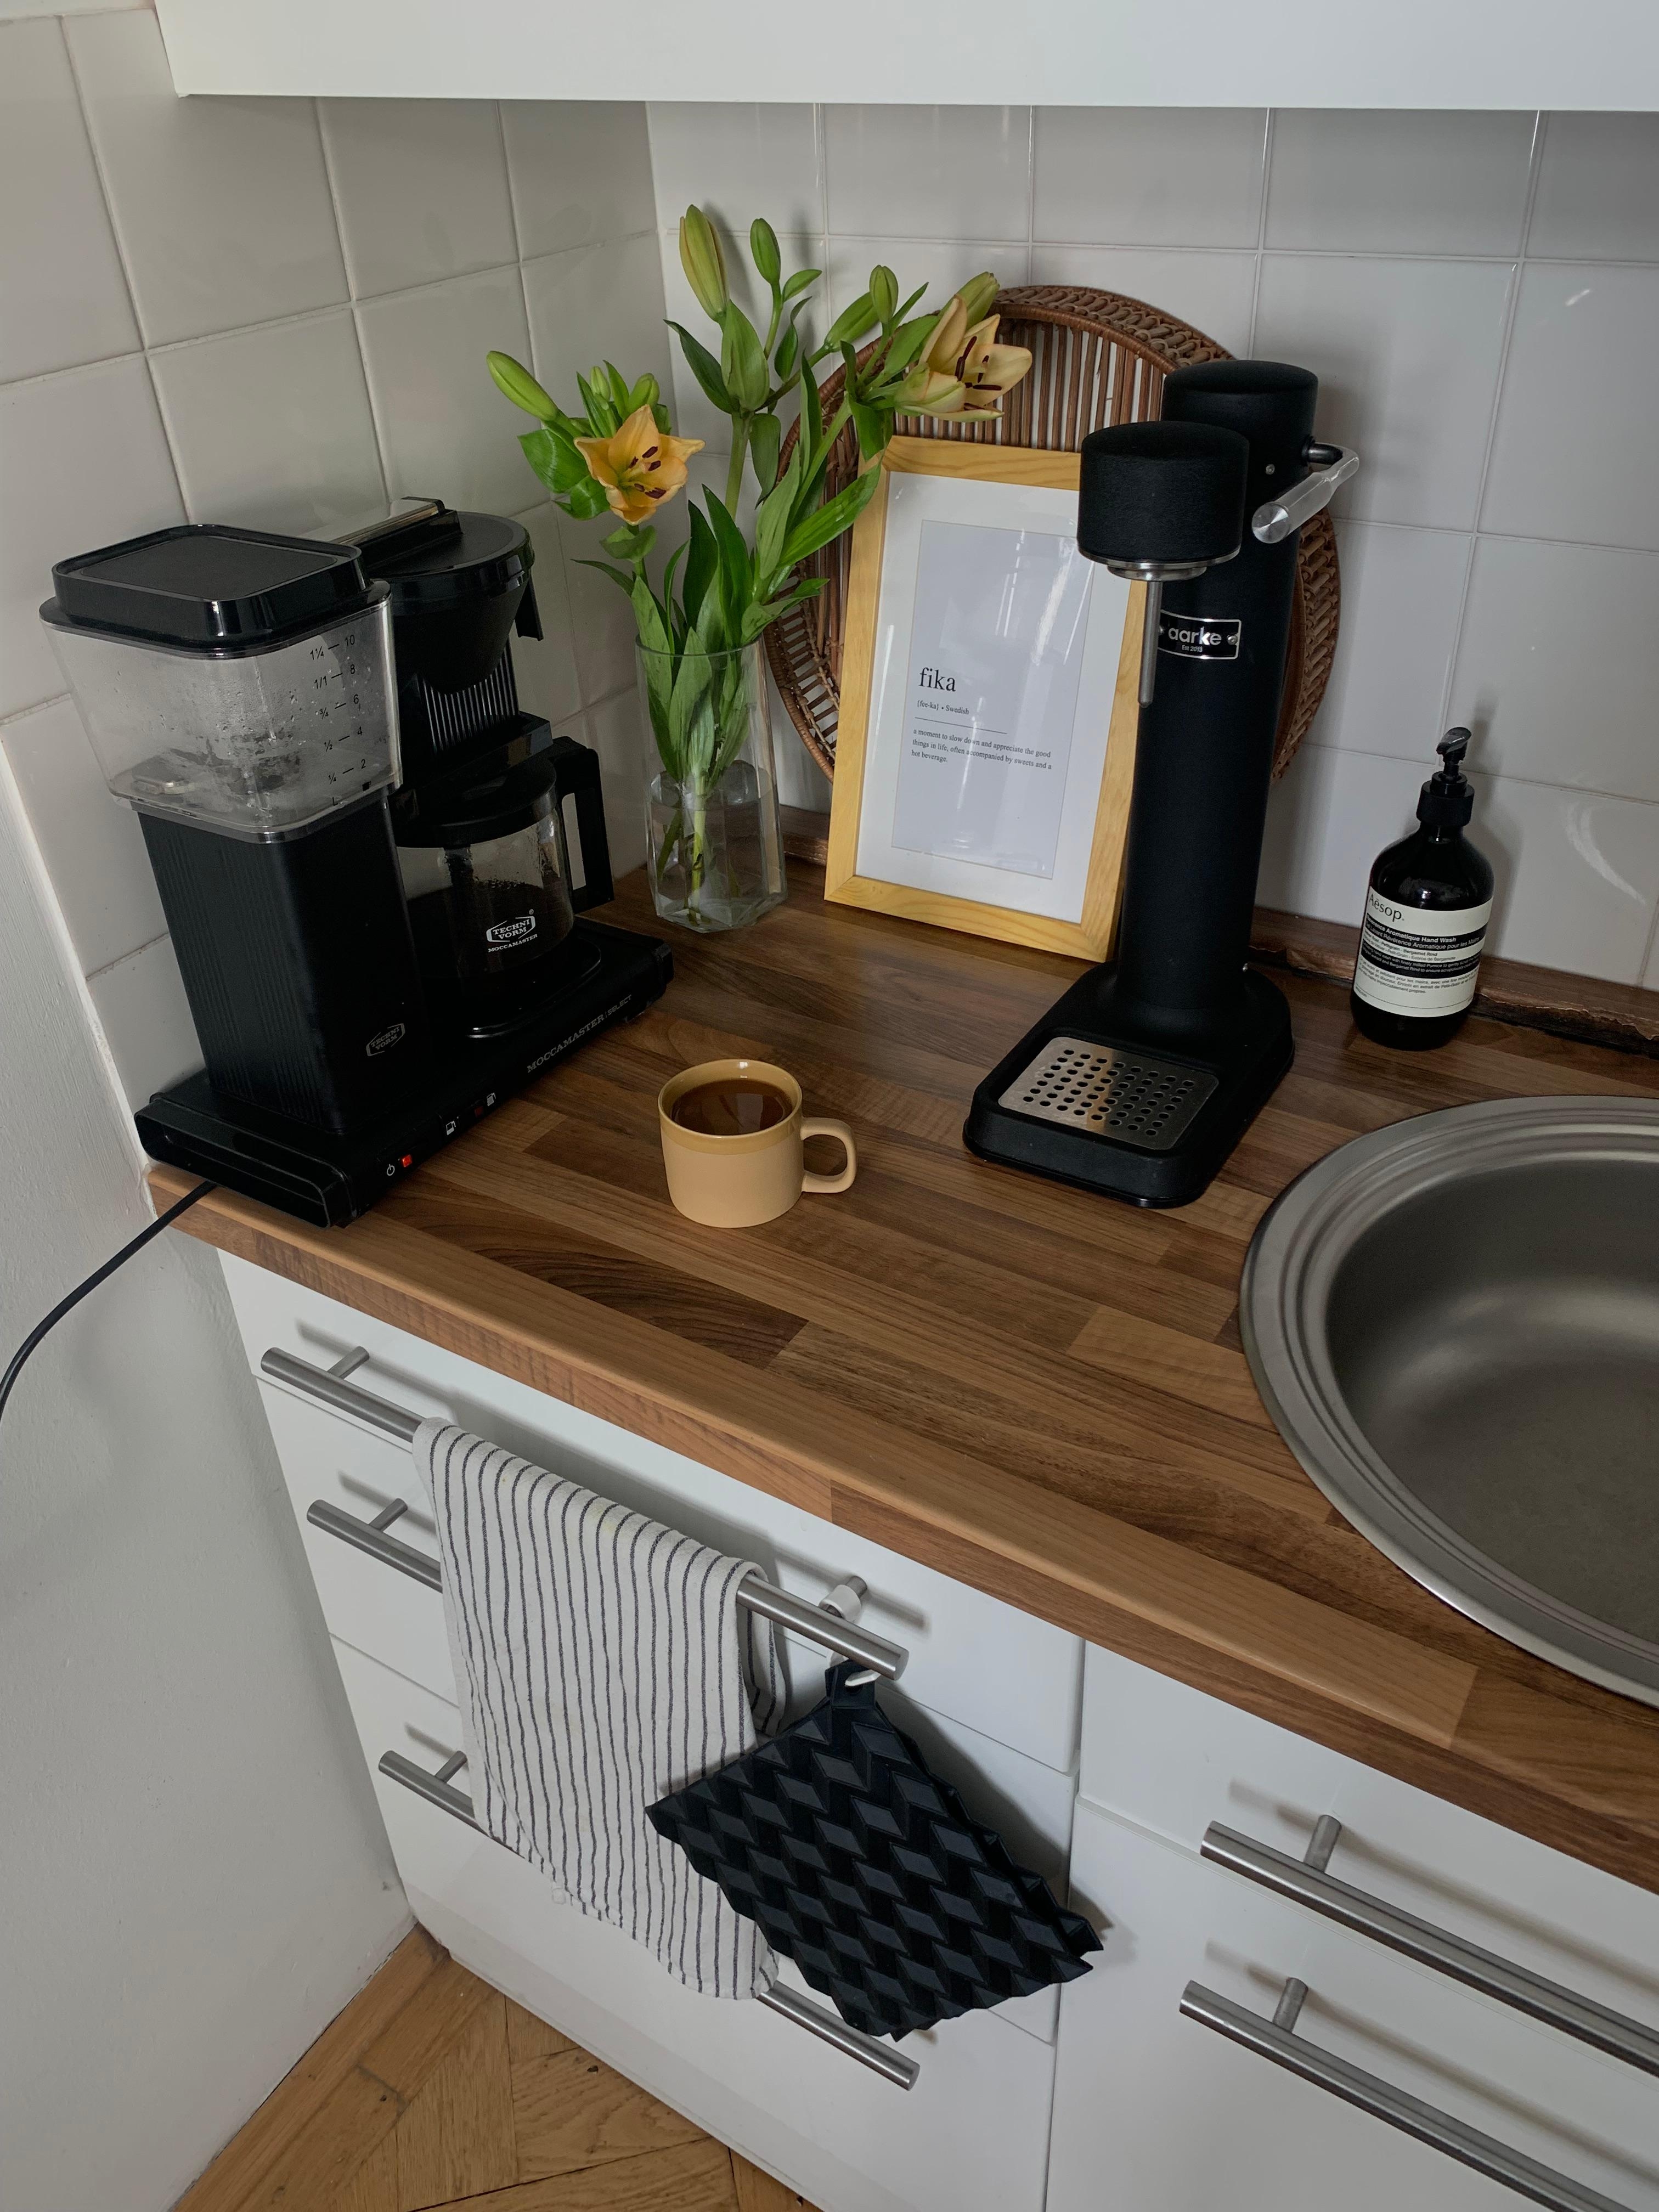 But first, coffee ☕️
#küche #kitchen #coffee #moccamaster #fika #aarke #kaffee #fika #lilien #blumenstrauß #blumen